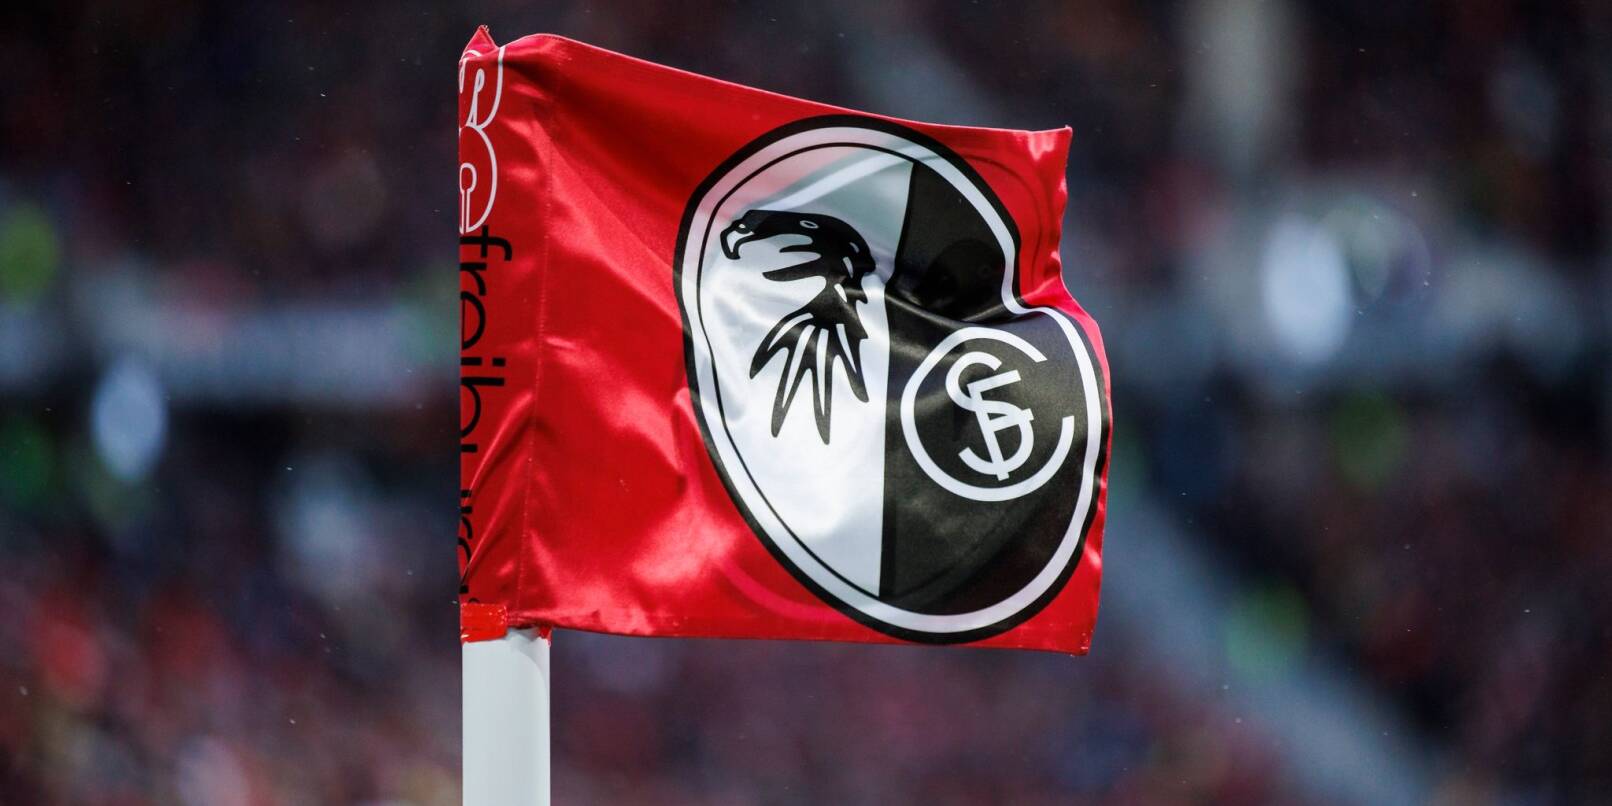 Die Eckfahne des SC Freiburg weht im Stadion.